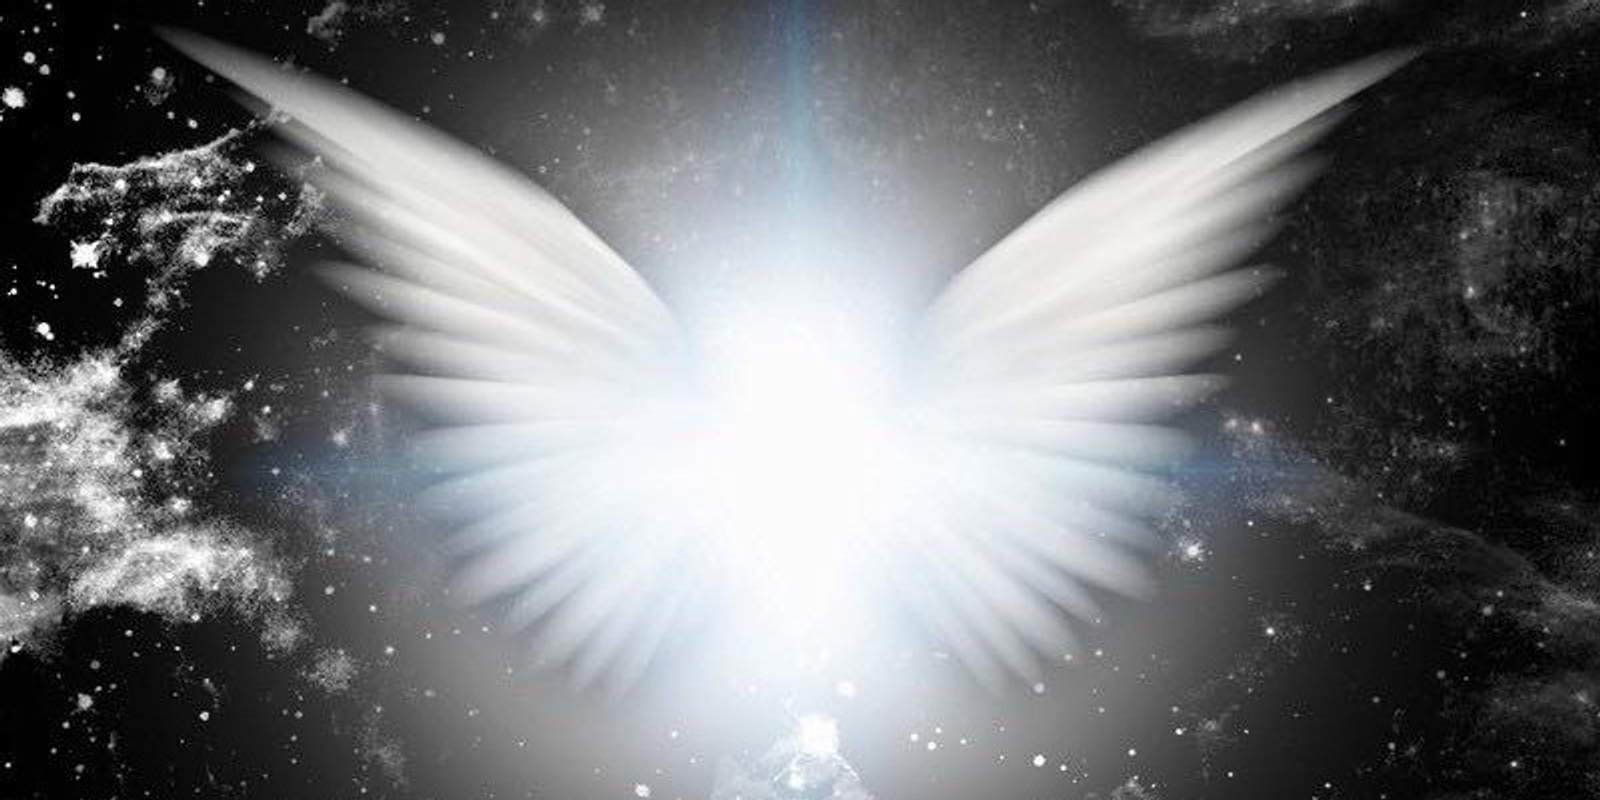 Hypnotic Journey to Meet Archangel Metatron